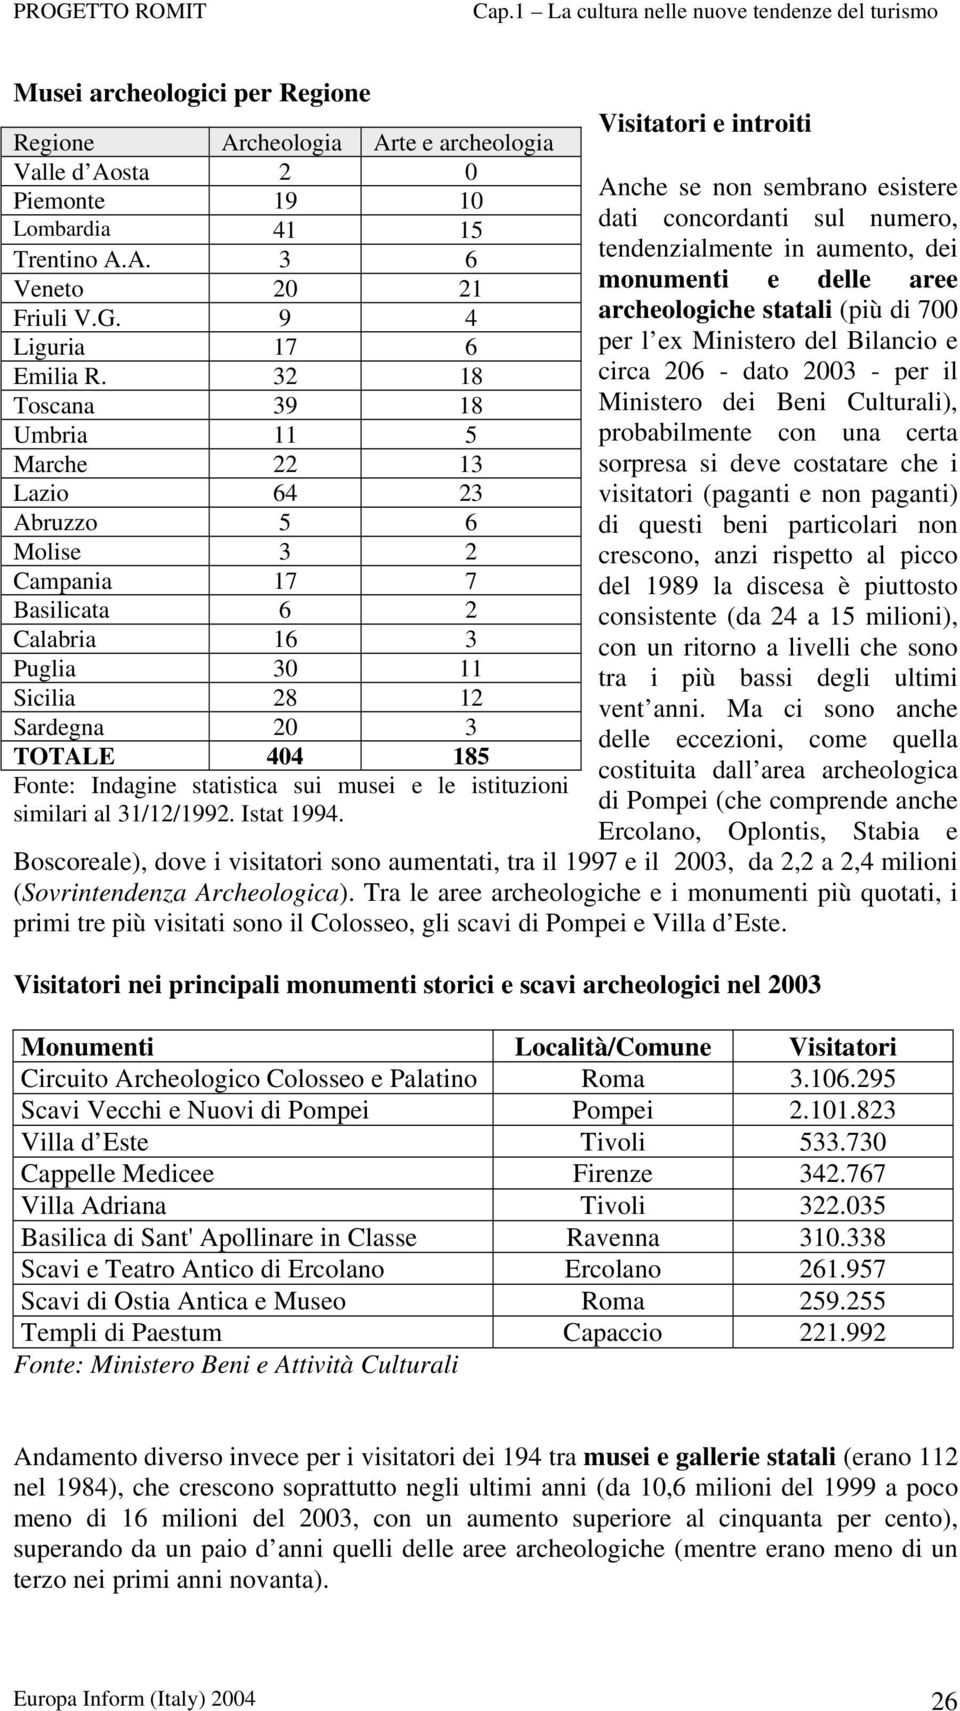 statistica sui musei e le istituzioni similari al 31/12/1992. Istat 1994.